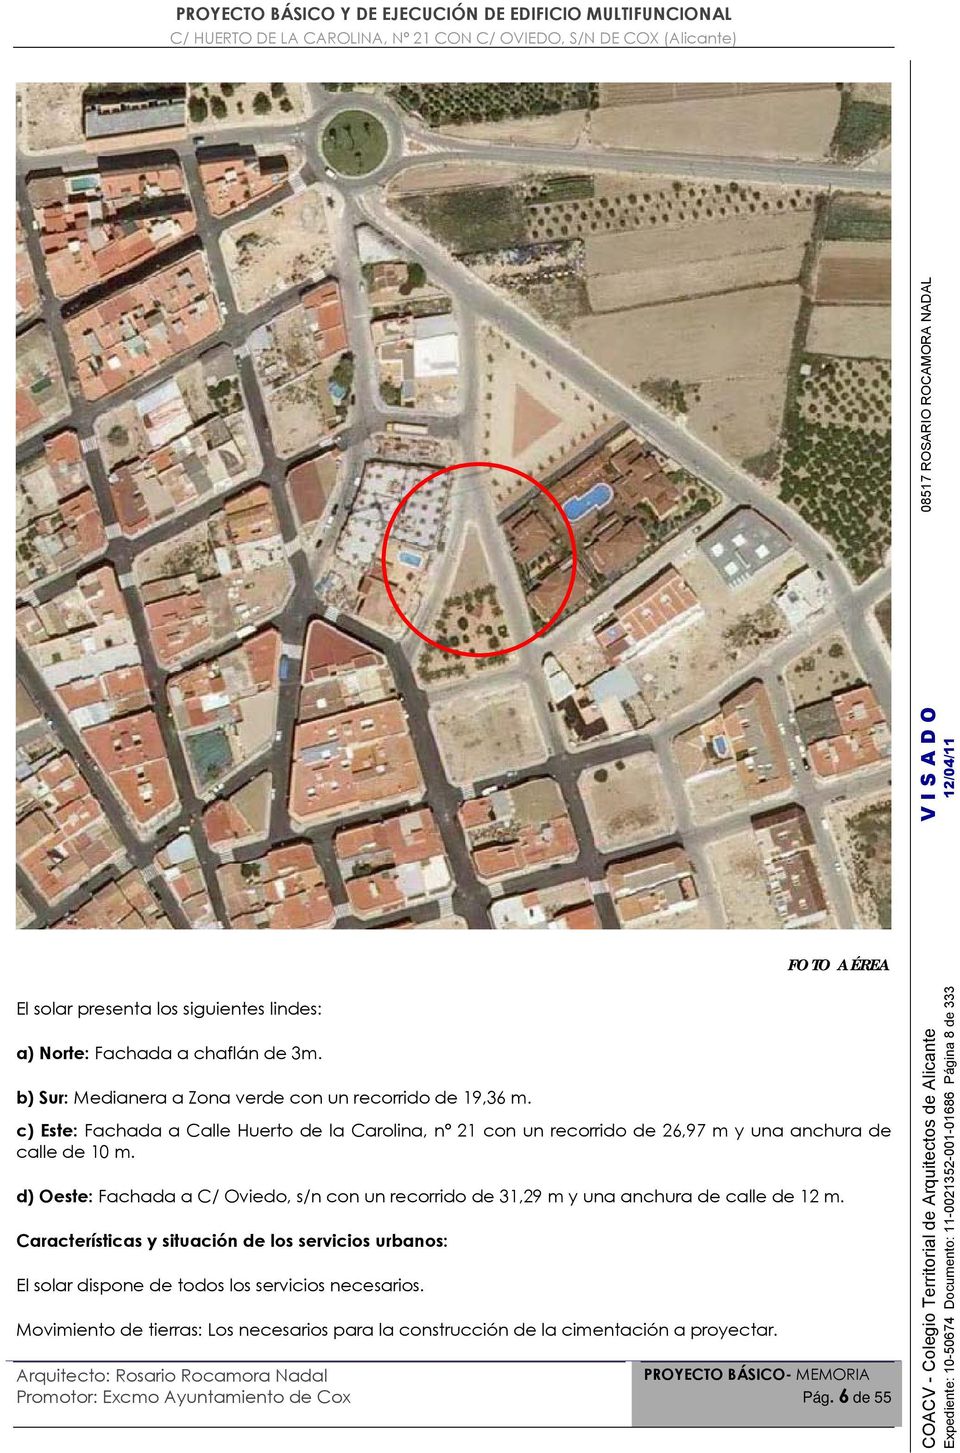 d) Oeste: Fachada a C/ Oviedo, s/n con un recorrido de 31,29 m y una anchura de calle de 12 m.